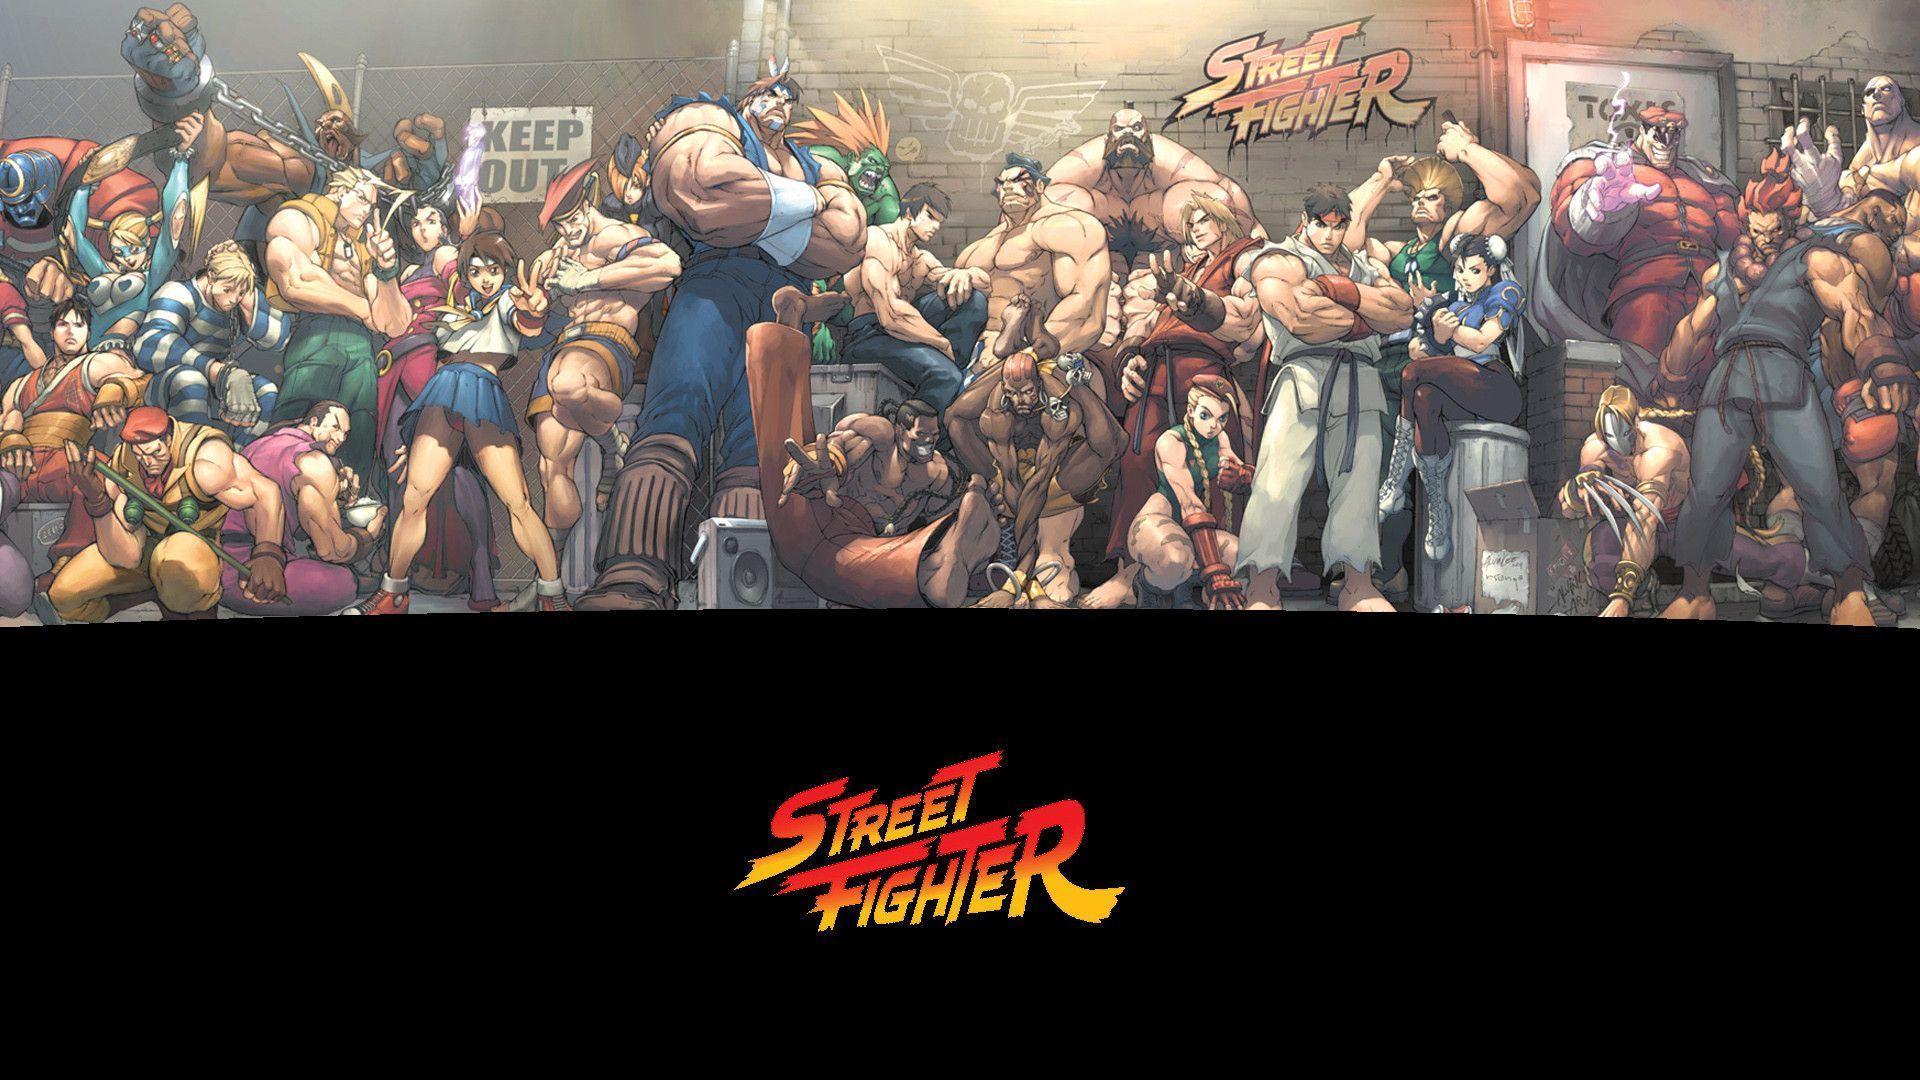 Street Fighter Wallpaper 37 260622 Image HD Wallpaper. Wallfoy.com